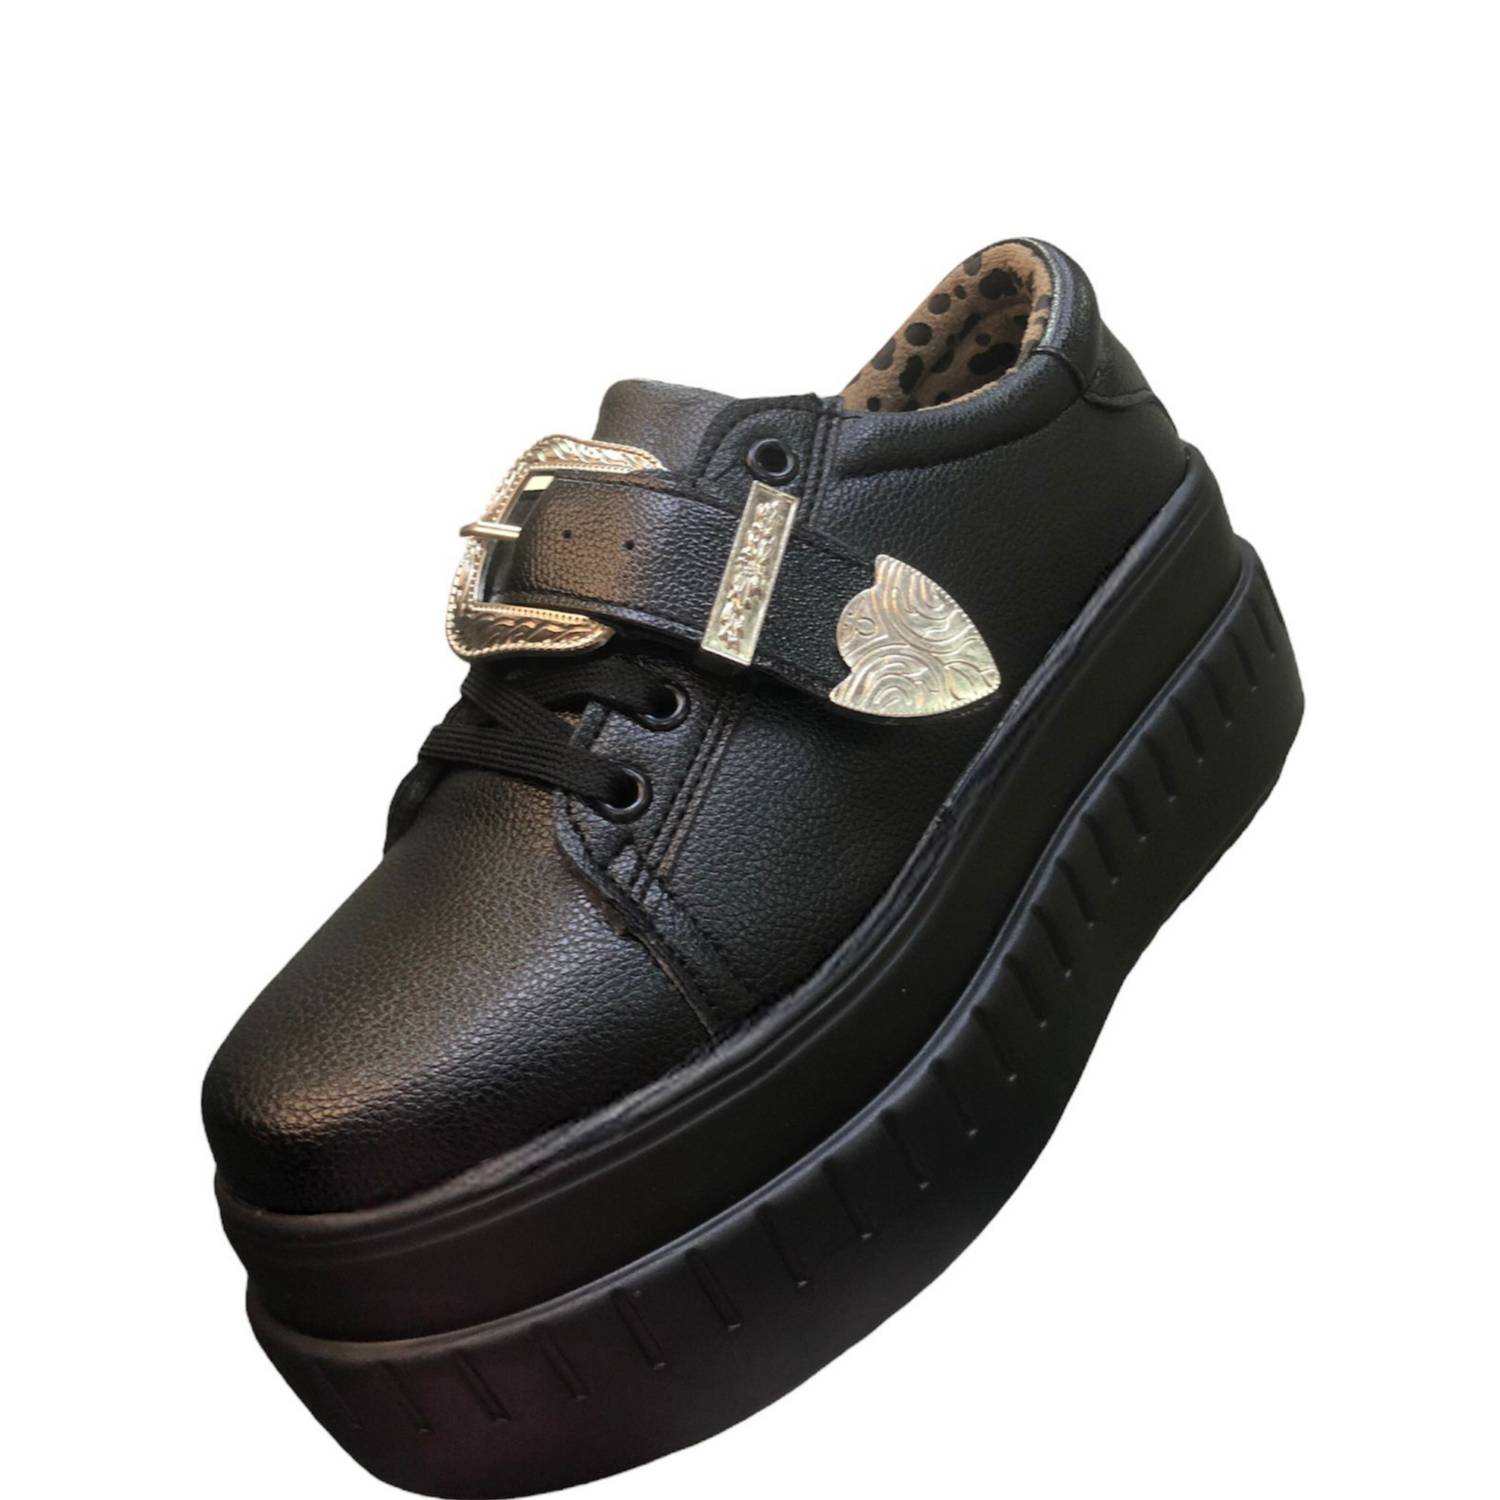 MD Zapatillas negra con plataforma caña baja livianas | falabella.com